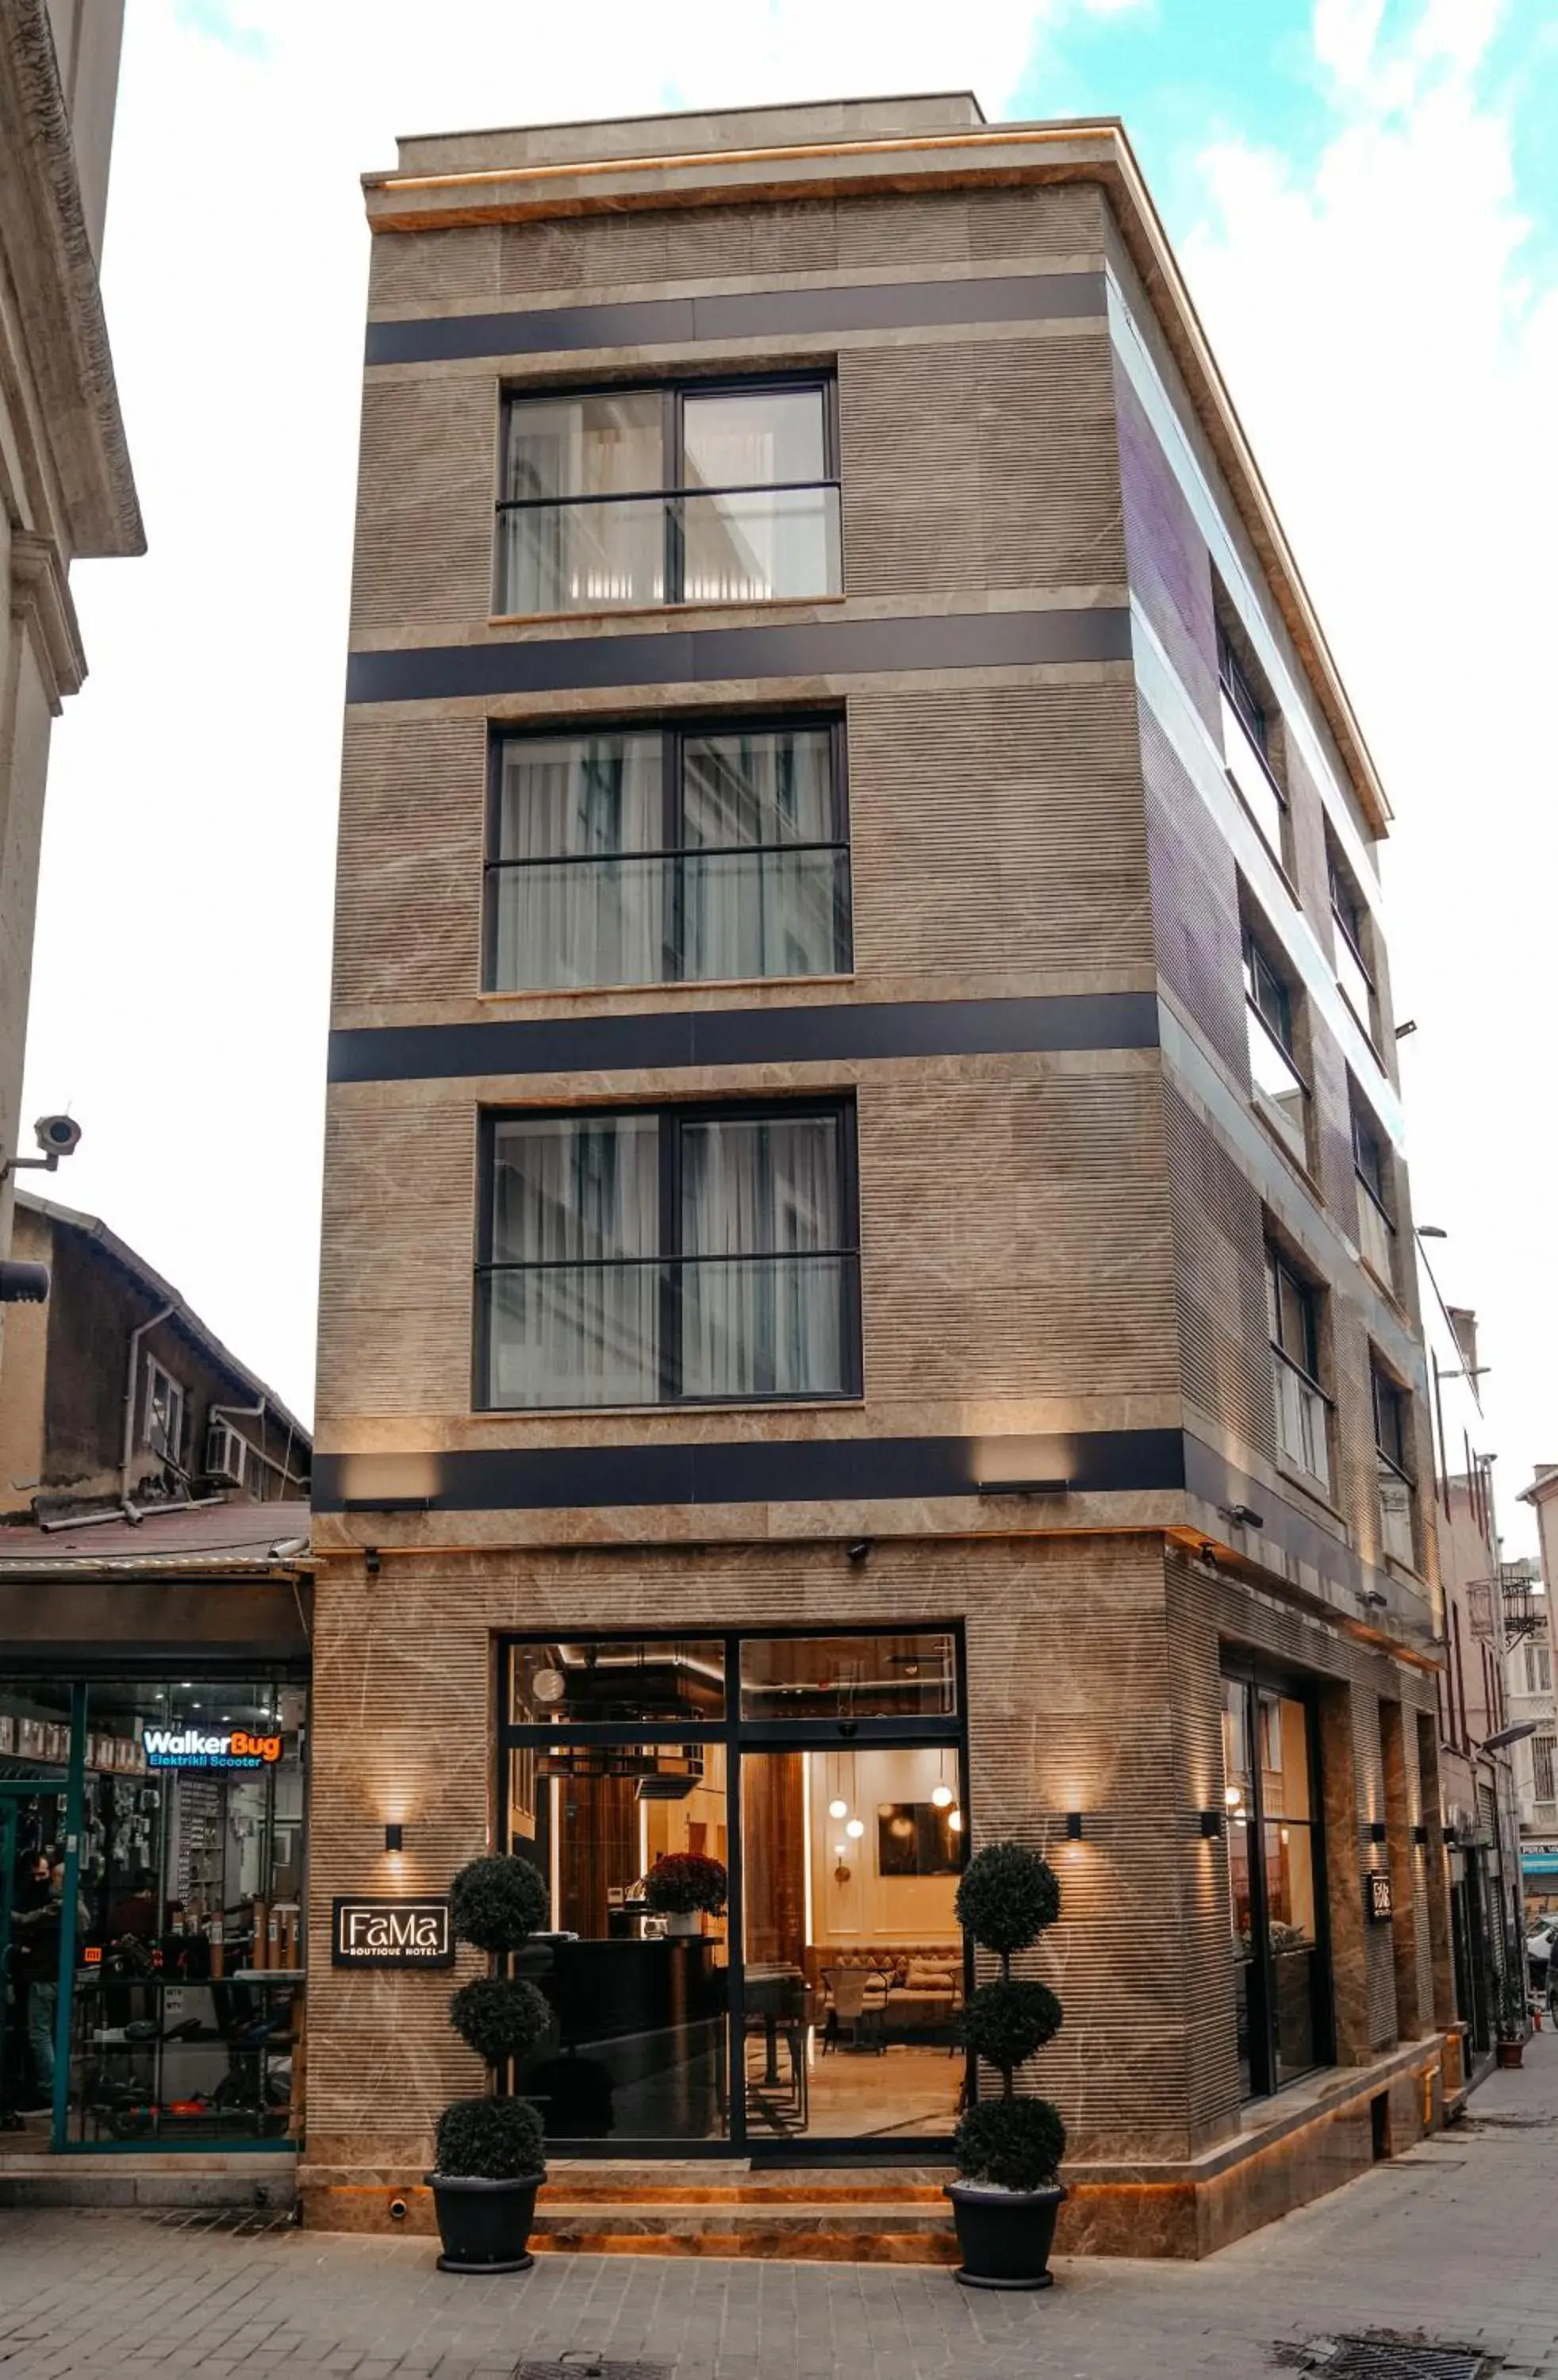 Property Building in Fama Karaköy